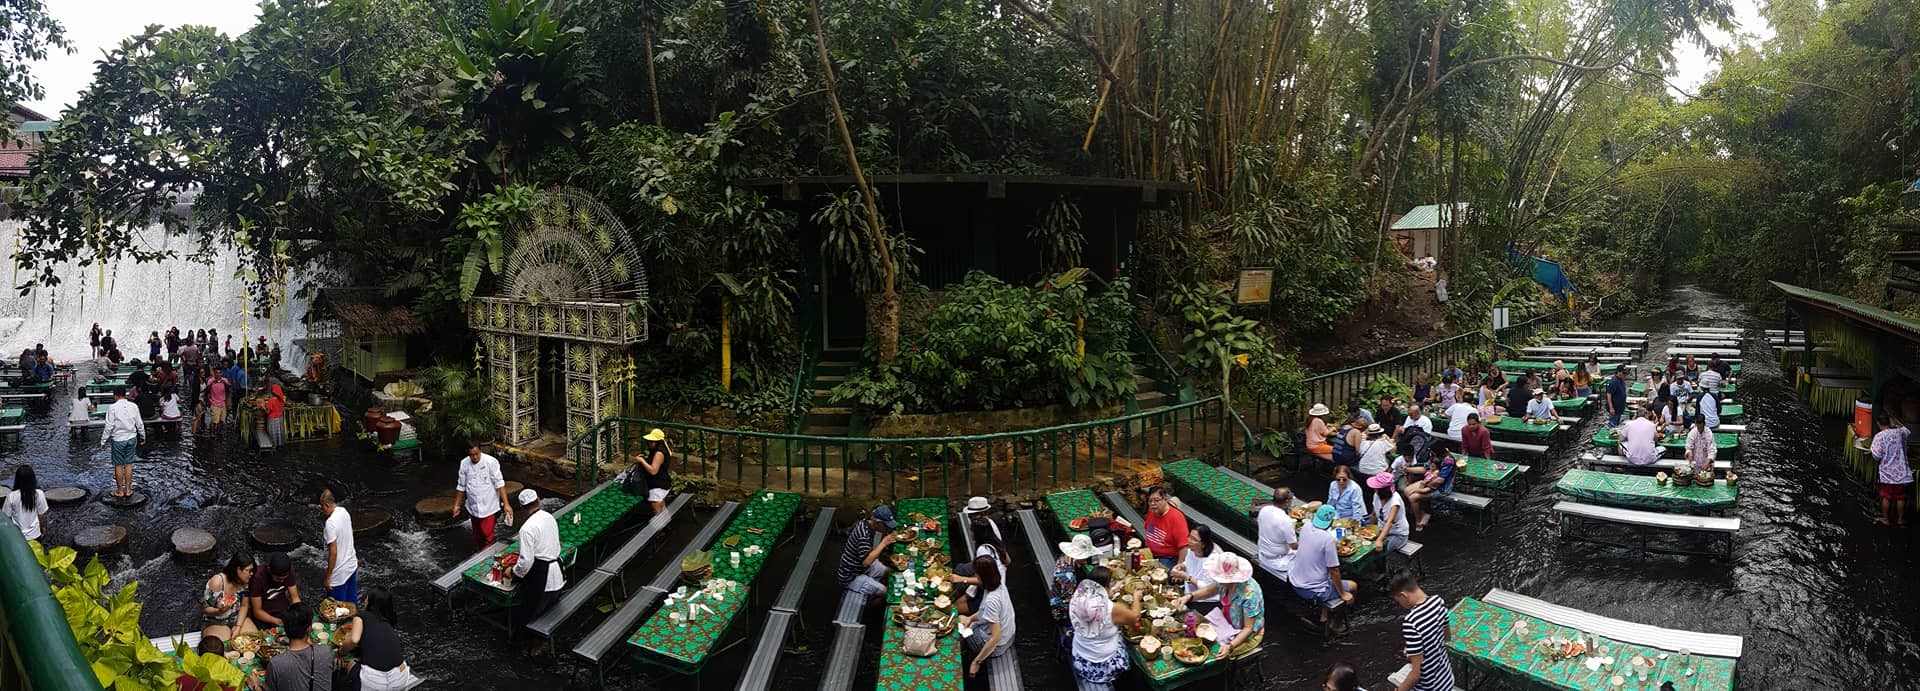 Ăn ngon thêm vạn lần với nhà hàng dưới chân thác độc lạ ở Philippines - 10